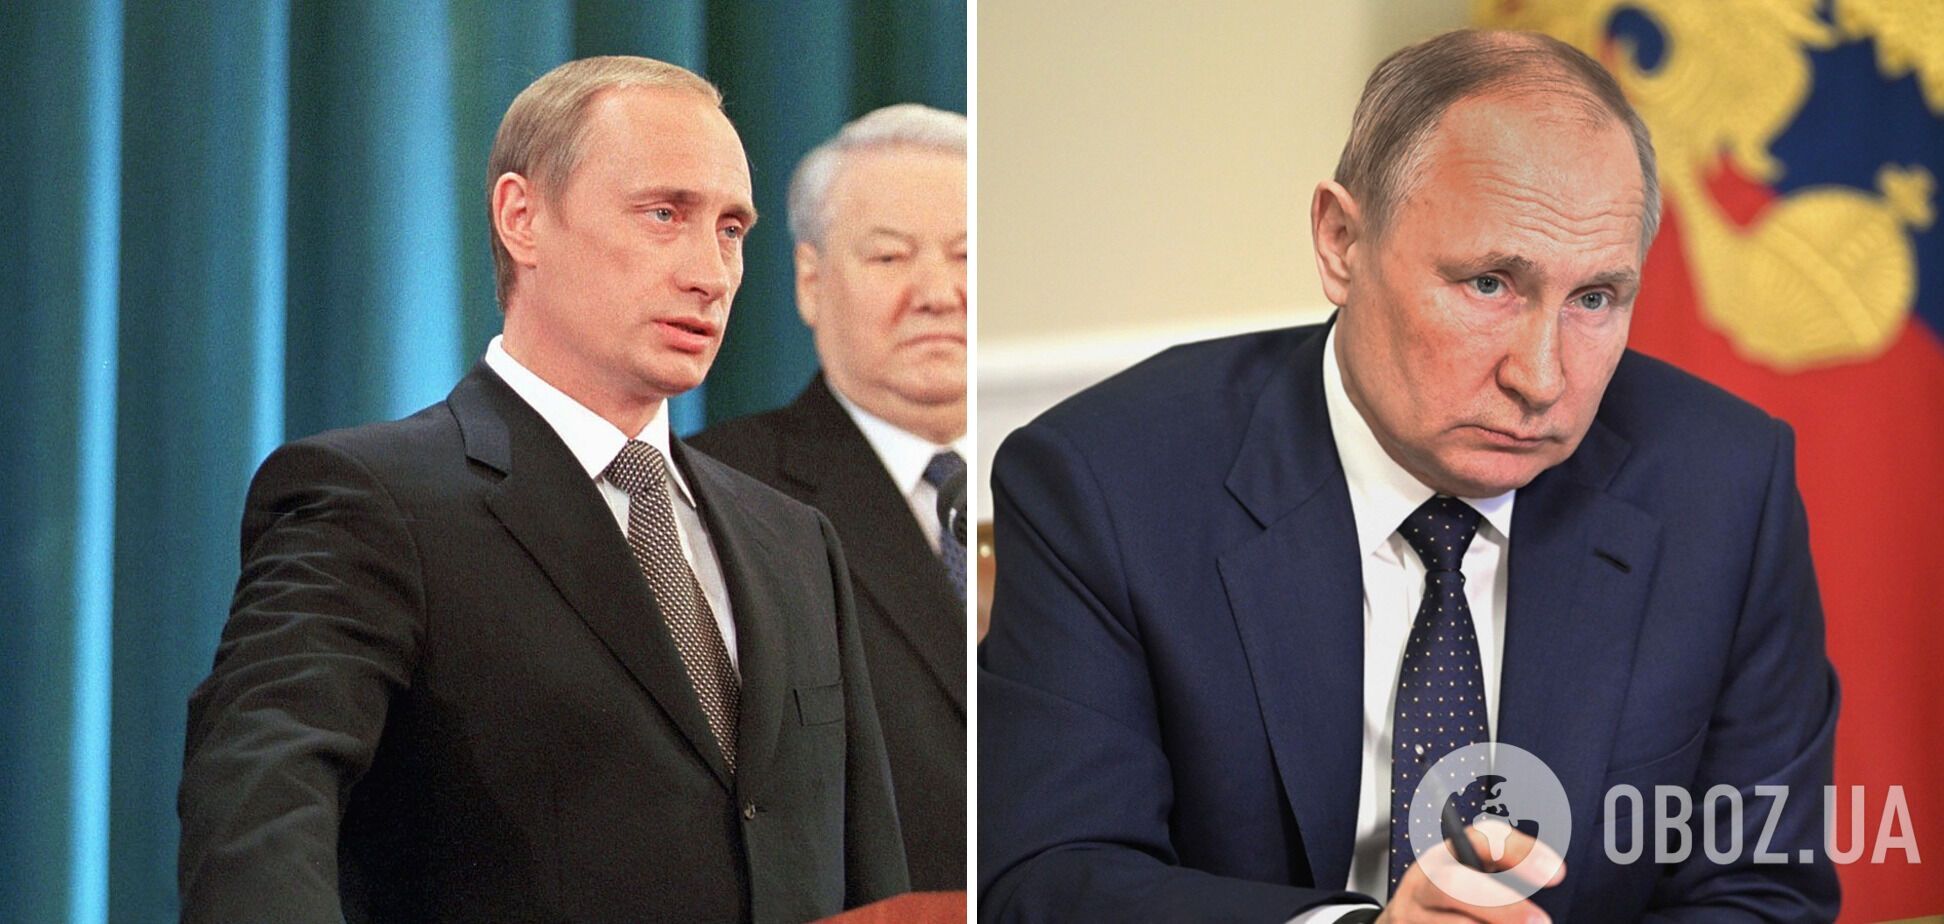 Ботокс чи двійники? Як змінився Путін за 24 роки правління РФ. Фото з інавгурацій